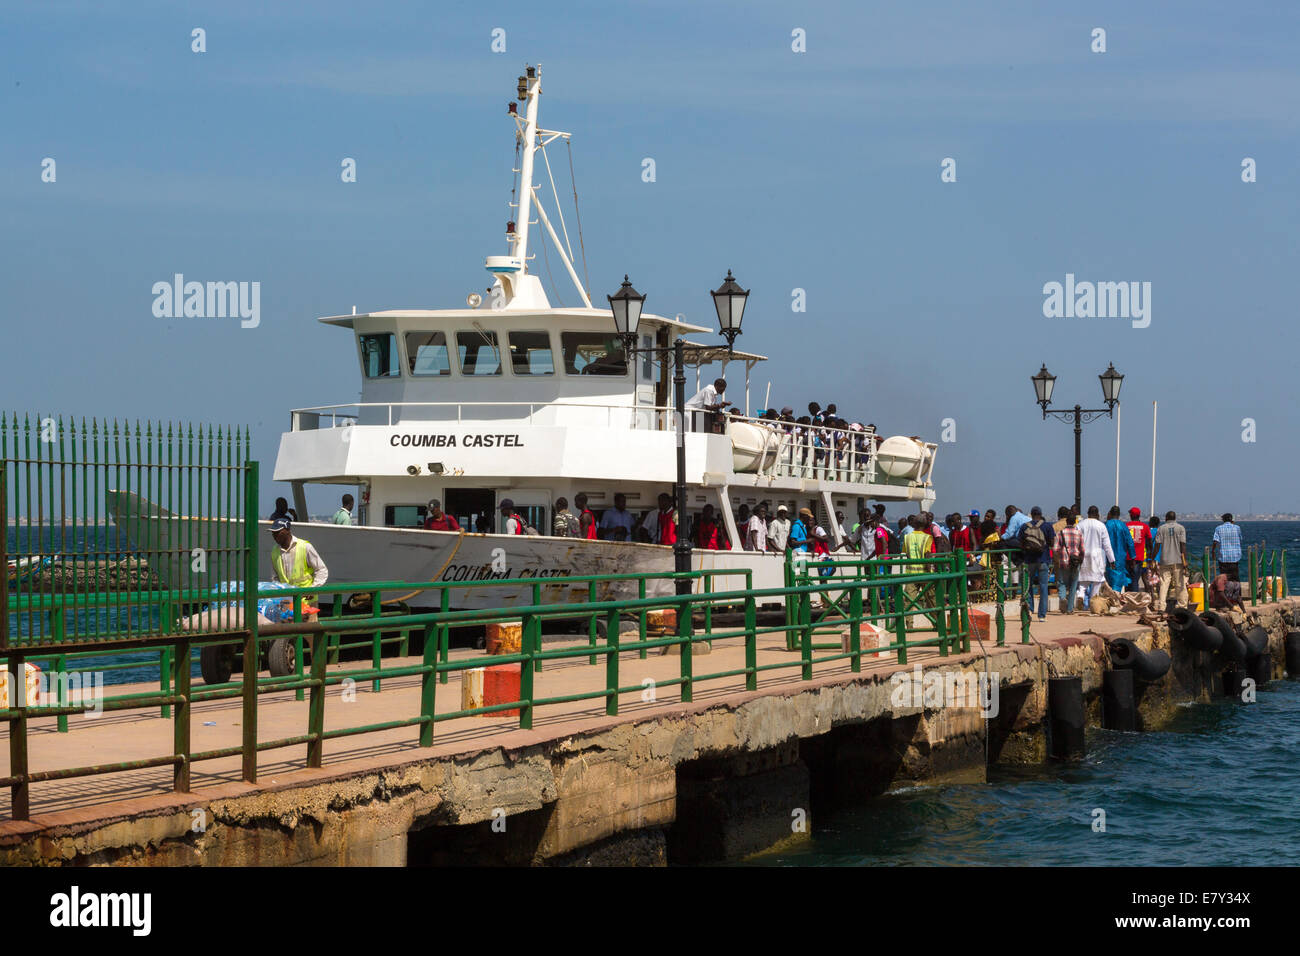 Columbia Castel, il traghetto per l'isola di Gorée, scarica i suoi passeggeri in arrivo forma Dakar, Senegal Foto Stock